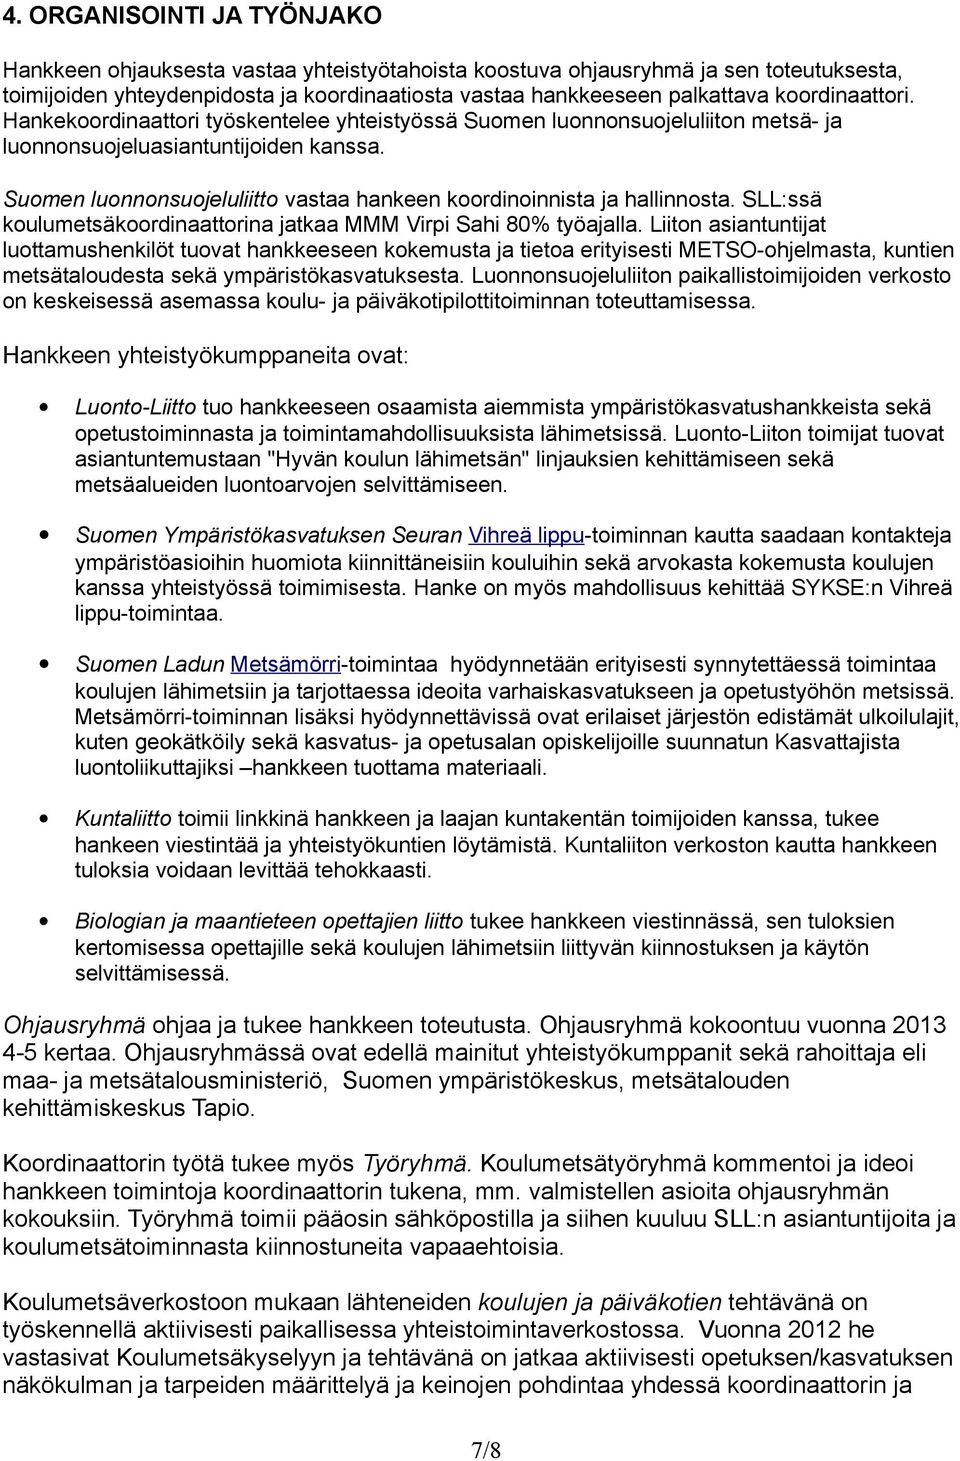 Suomen luonnonsuojeluliitto vastaa hankeen koordinoinnista ja hallinnosta. SLL:ssä koulumetsäkoordinaattorina jatkaa MMM Virpi Sahi 80% työajalla.